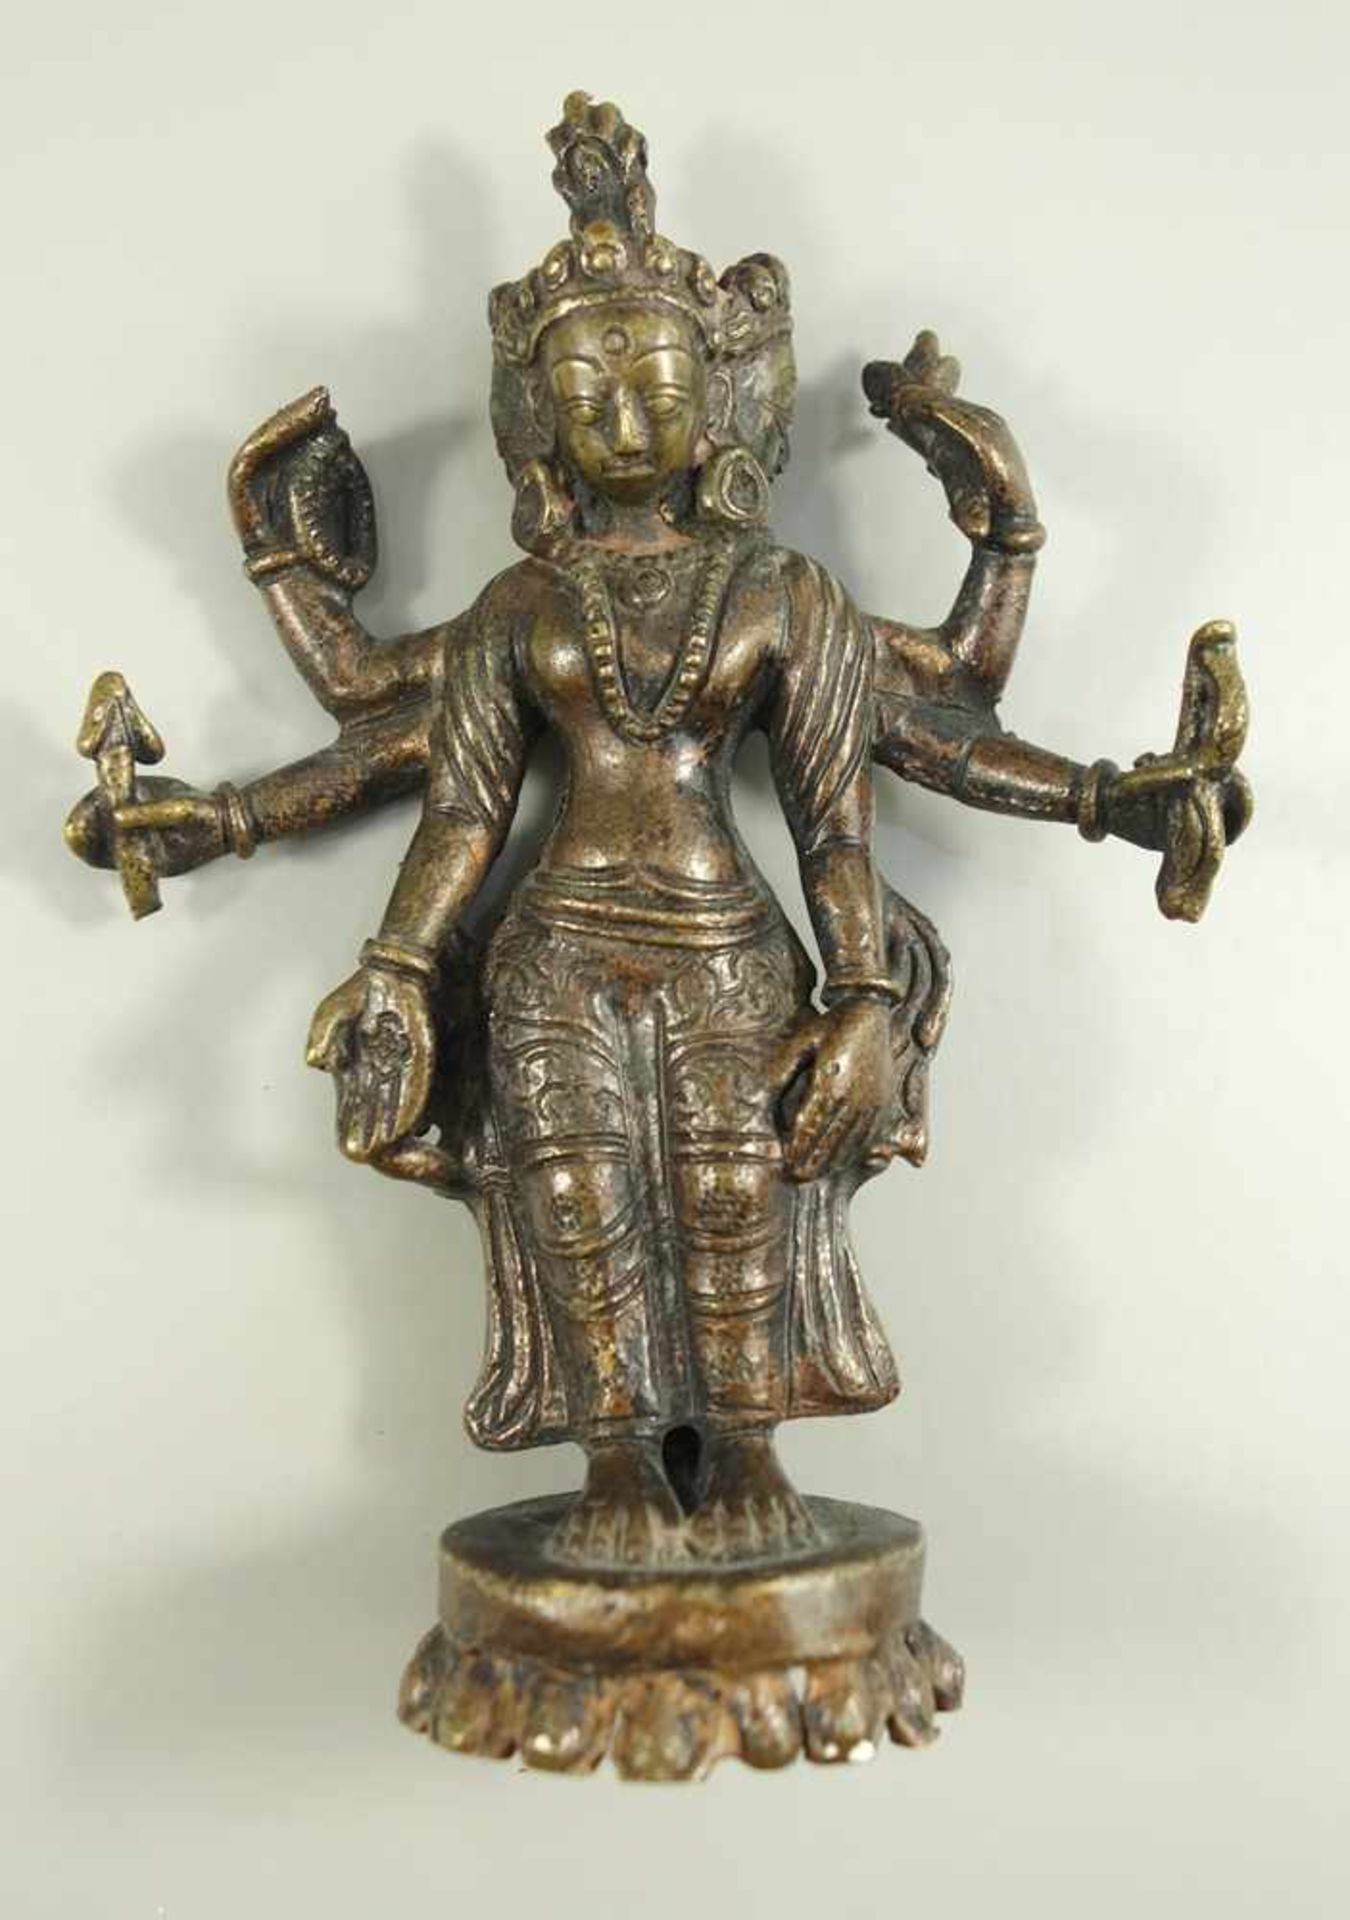 5 überwiegend weibliche Gottheiten, Südostasien, 20. Jh., verschiedene geschnitzte Edelhölzer, - Bild 2 aus 3